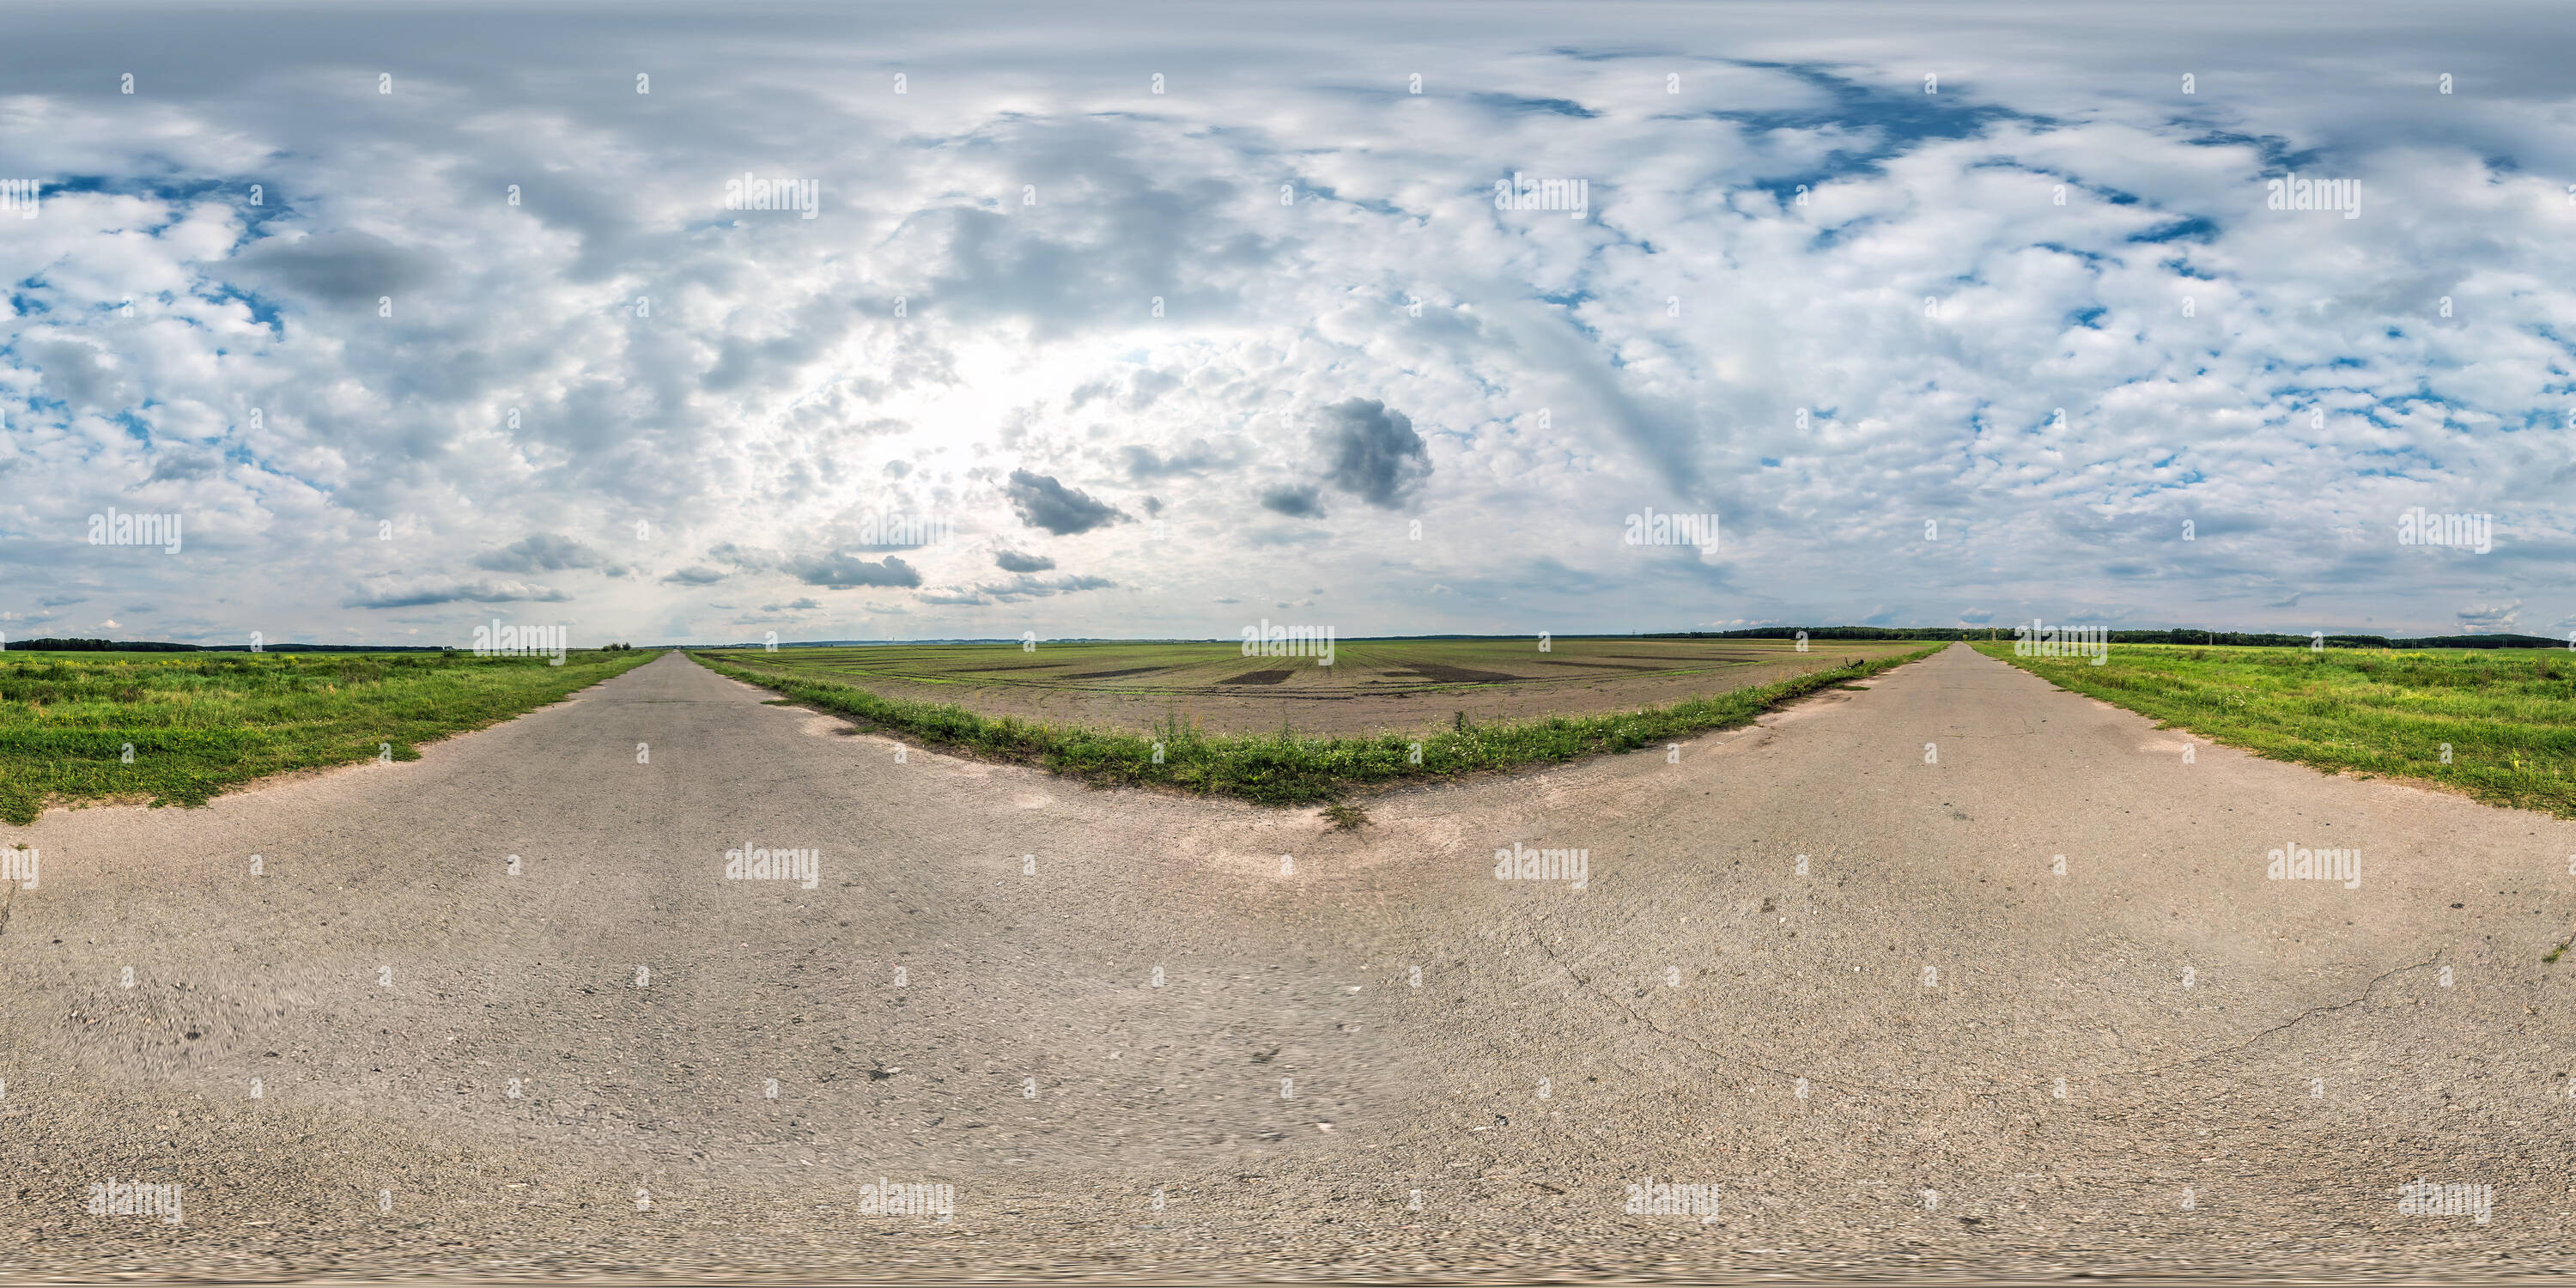 Vista panorámica en 360 grados de Perfecta completo panorama esférico de 360 por 180 grados de ángulo de visión sobre la grava de la carretera entre campos con proyección equirectangular impresionante en las nubes, skybox V